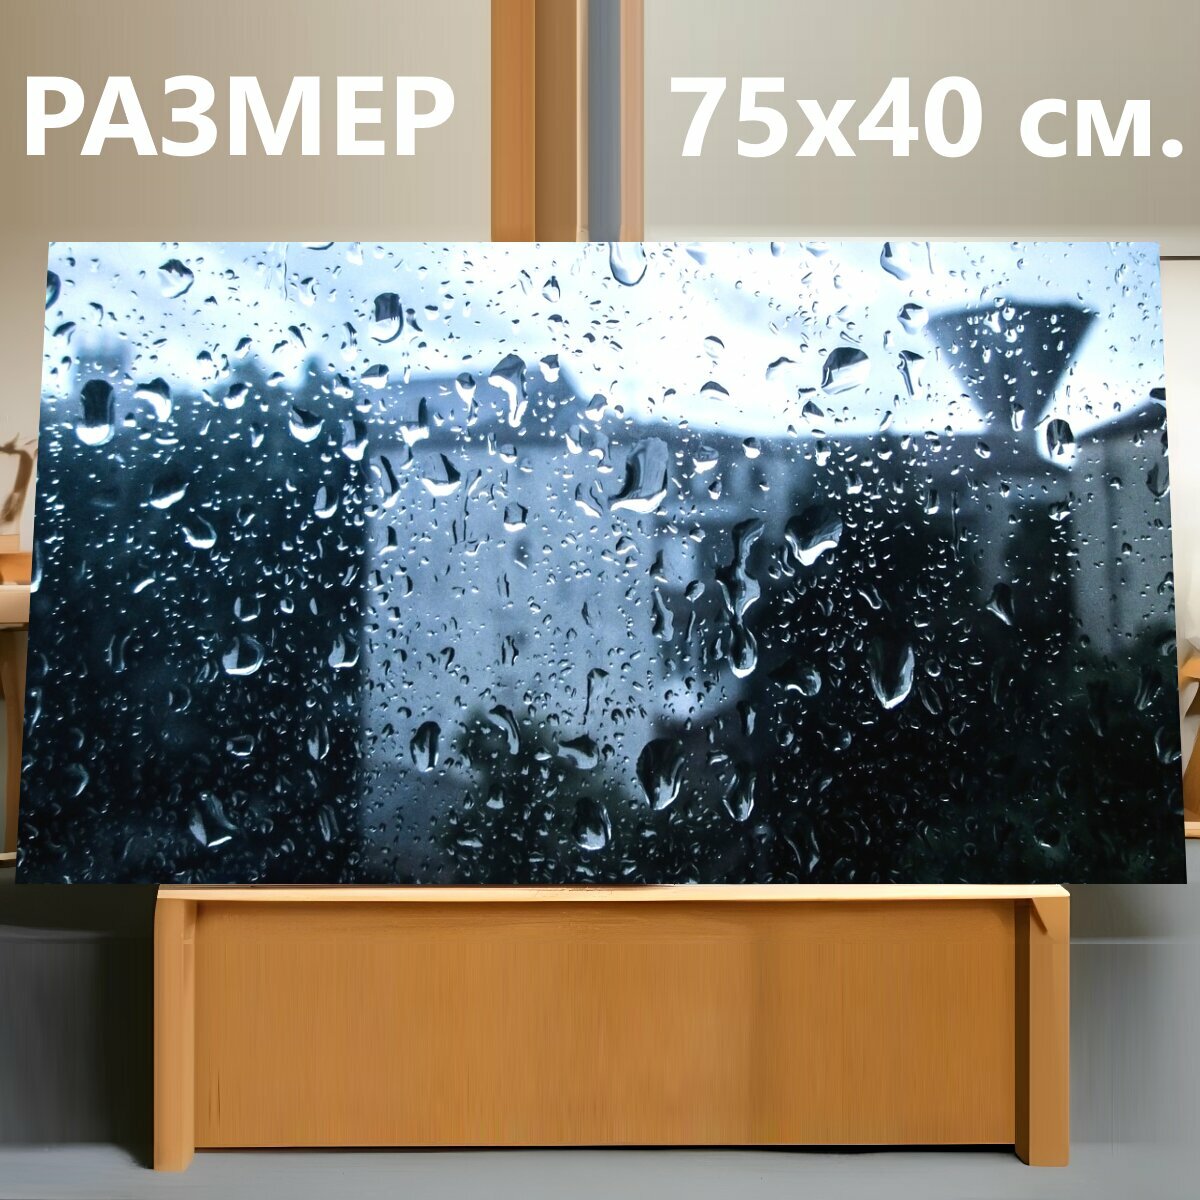 Картина на холсте "Заставка дождь, шторм, окно" на подрамнике 75х40 см. для интерьера